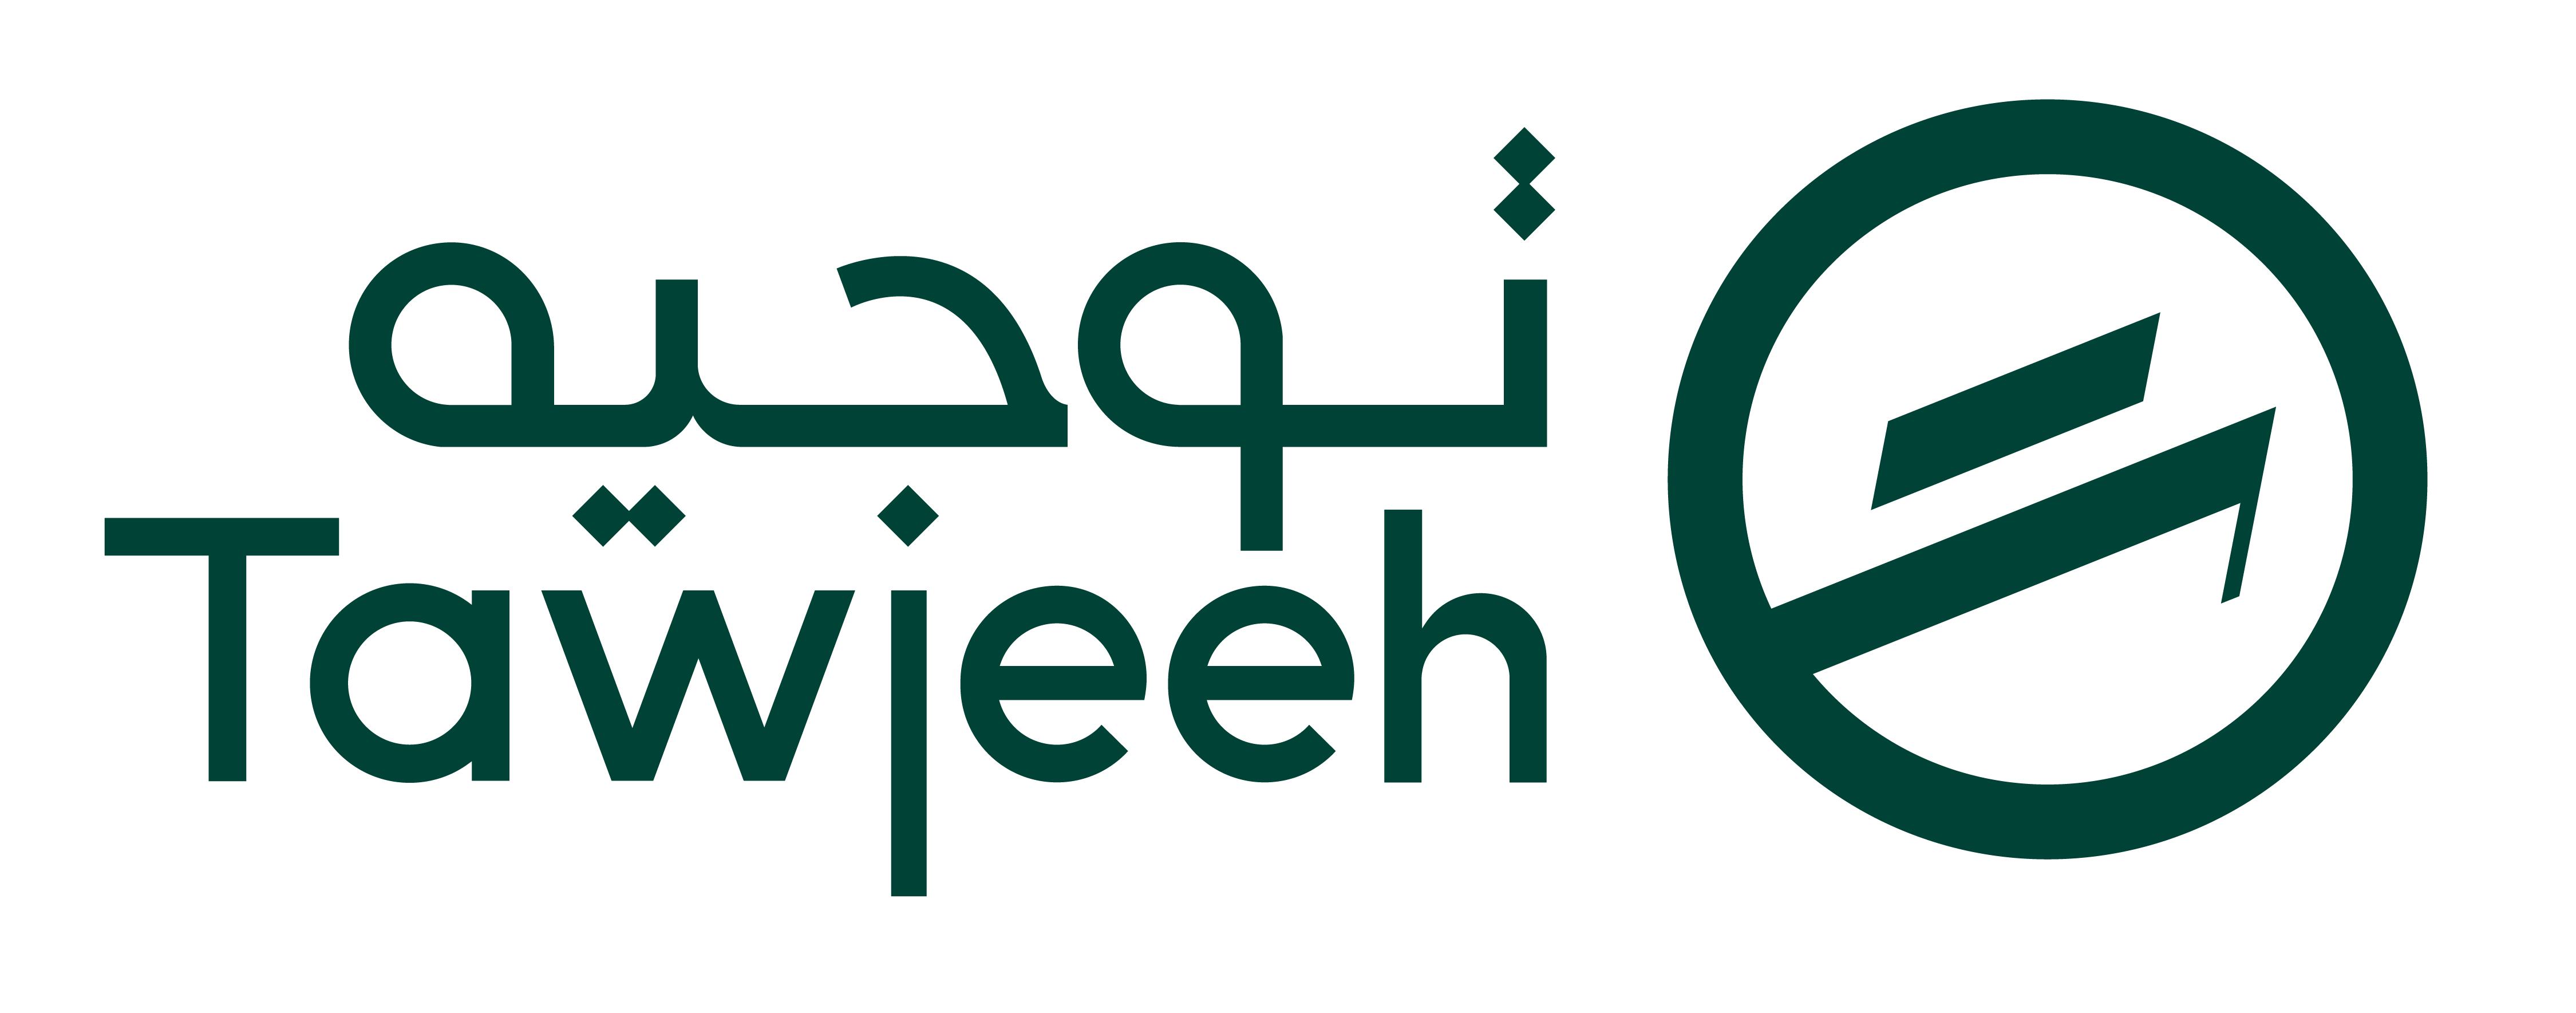 Tawjeeh logo 02